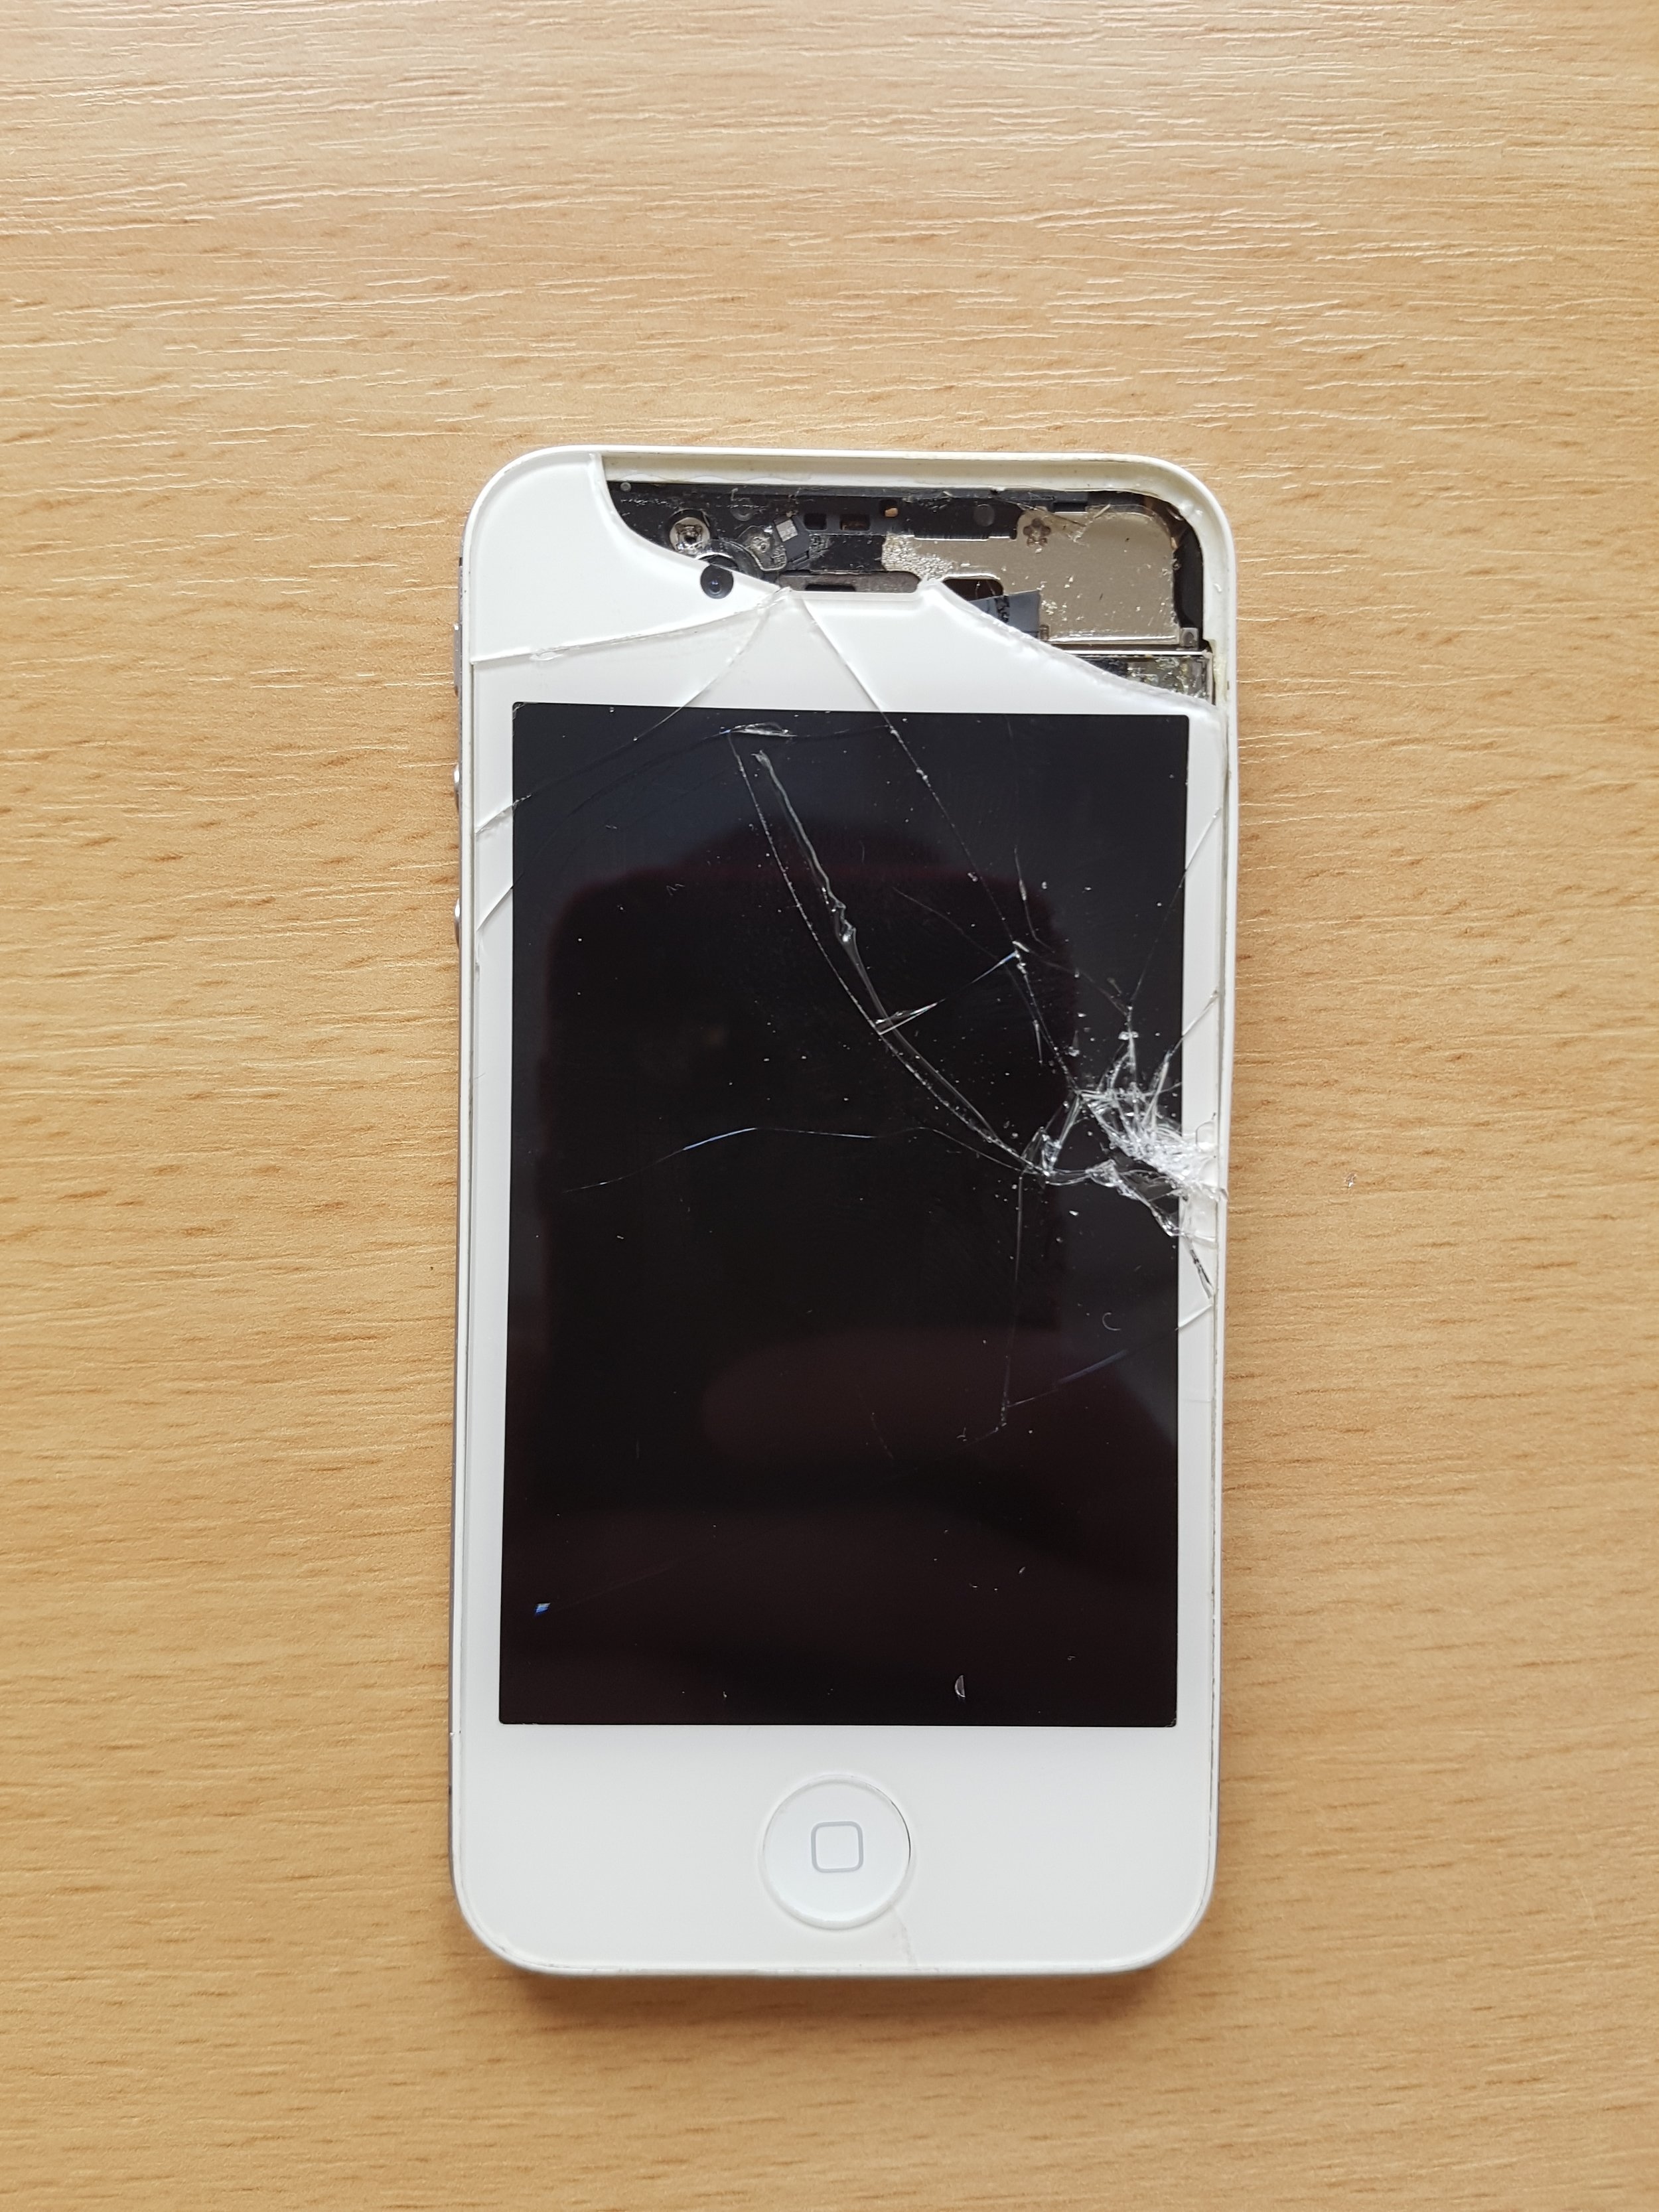 iPhone 4s Before Repair